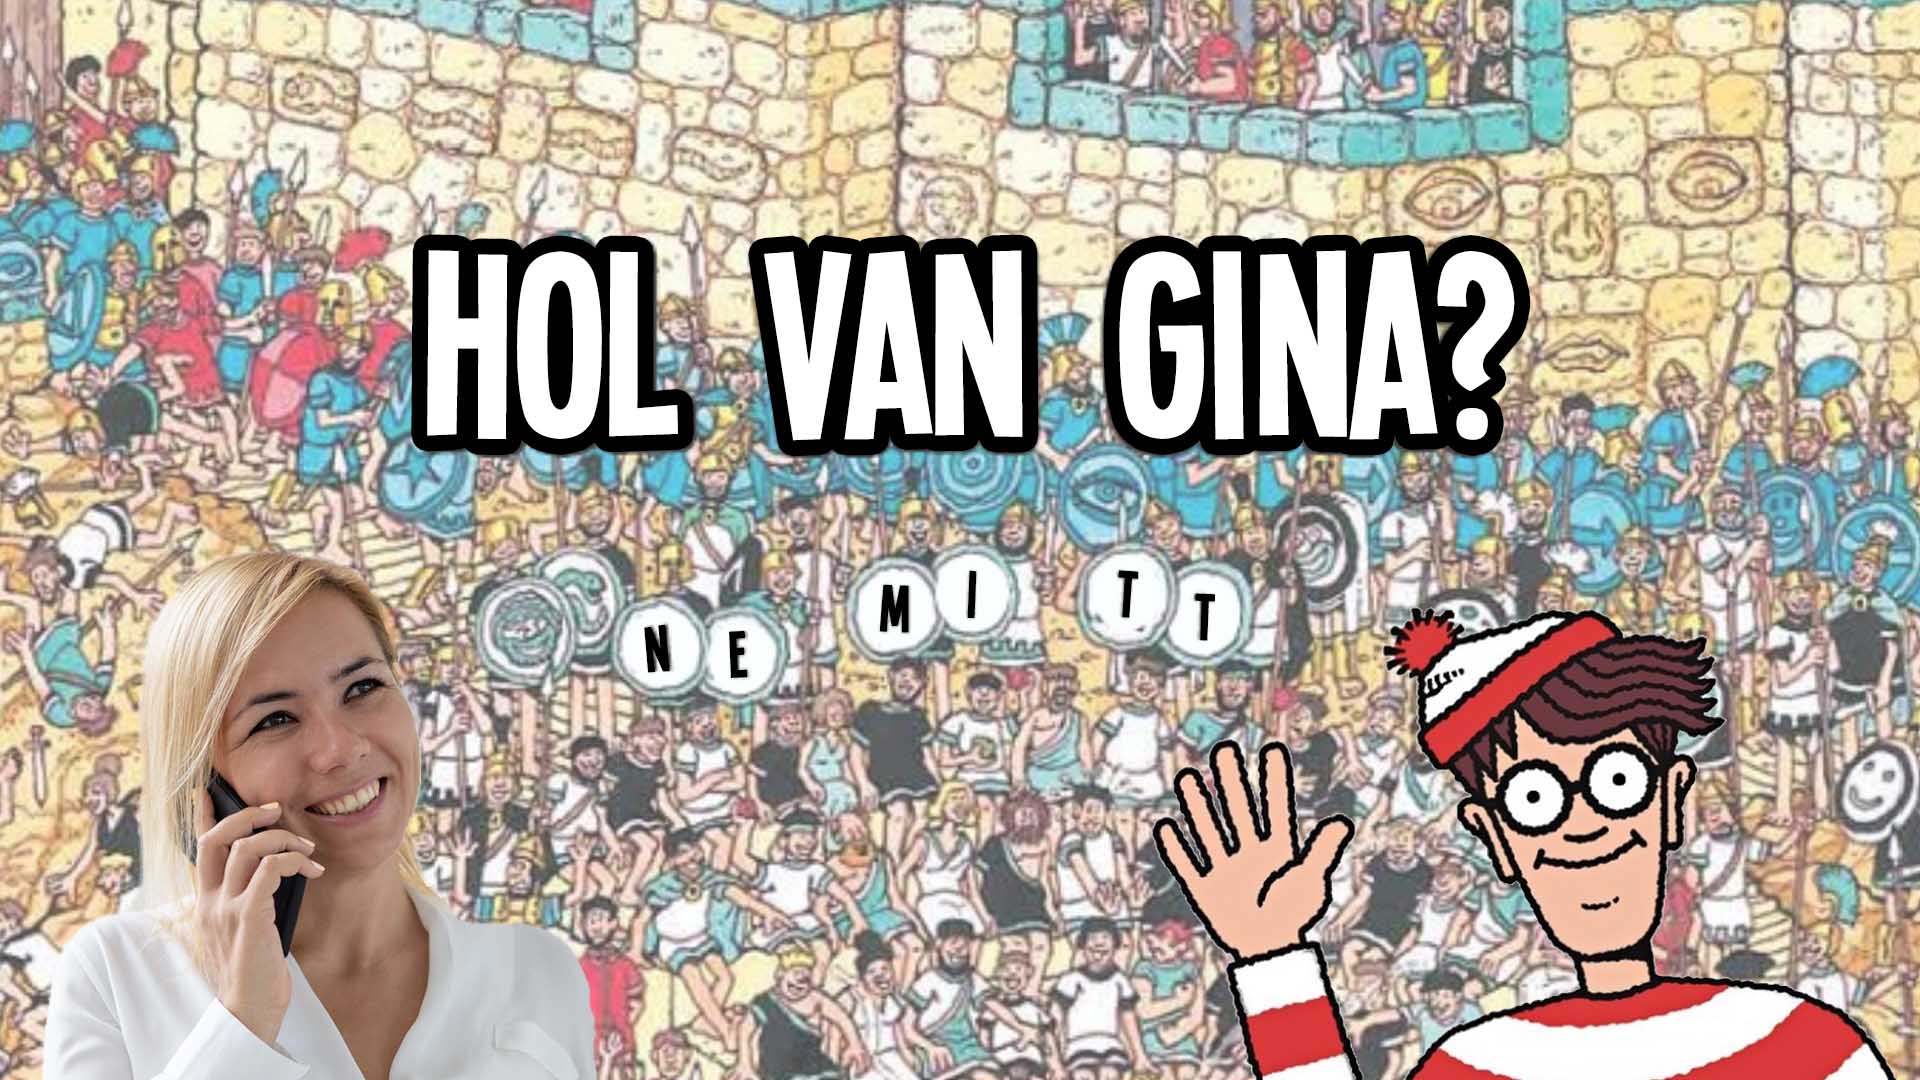 Hol van Gina?